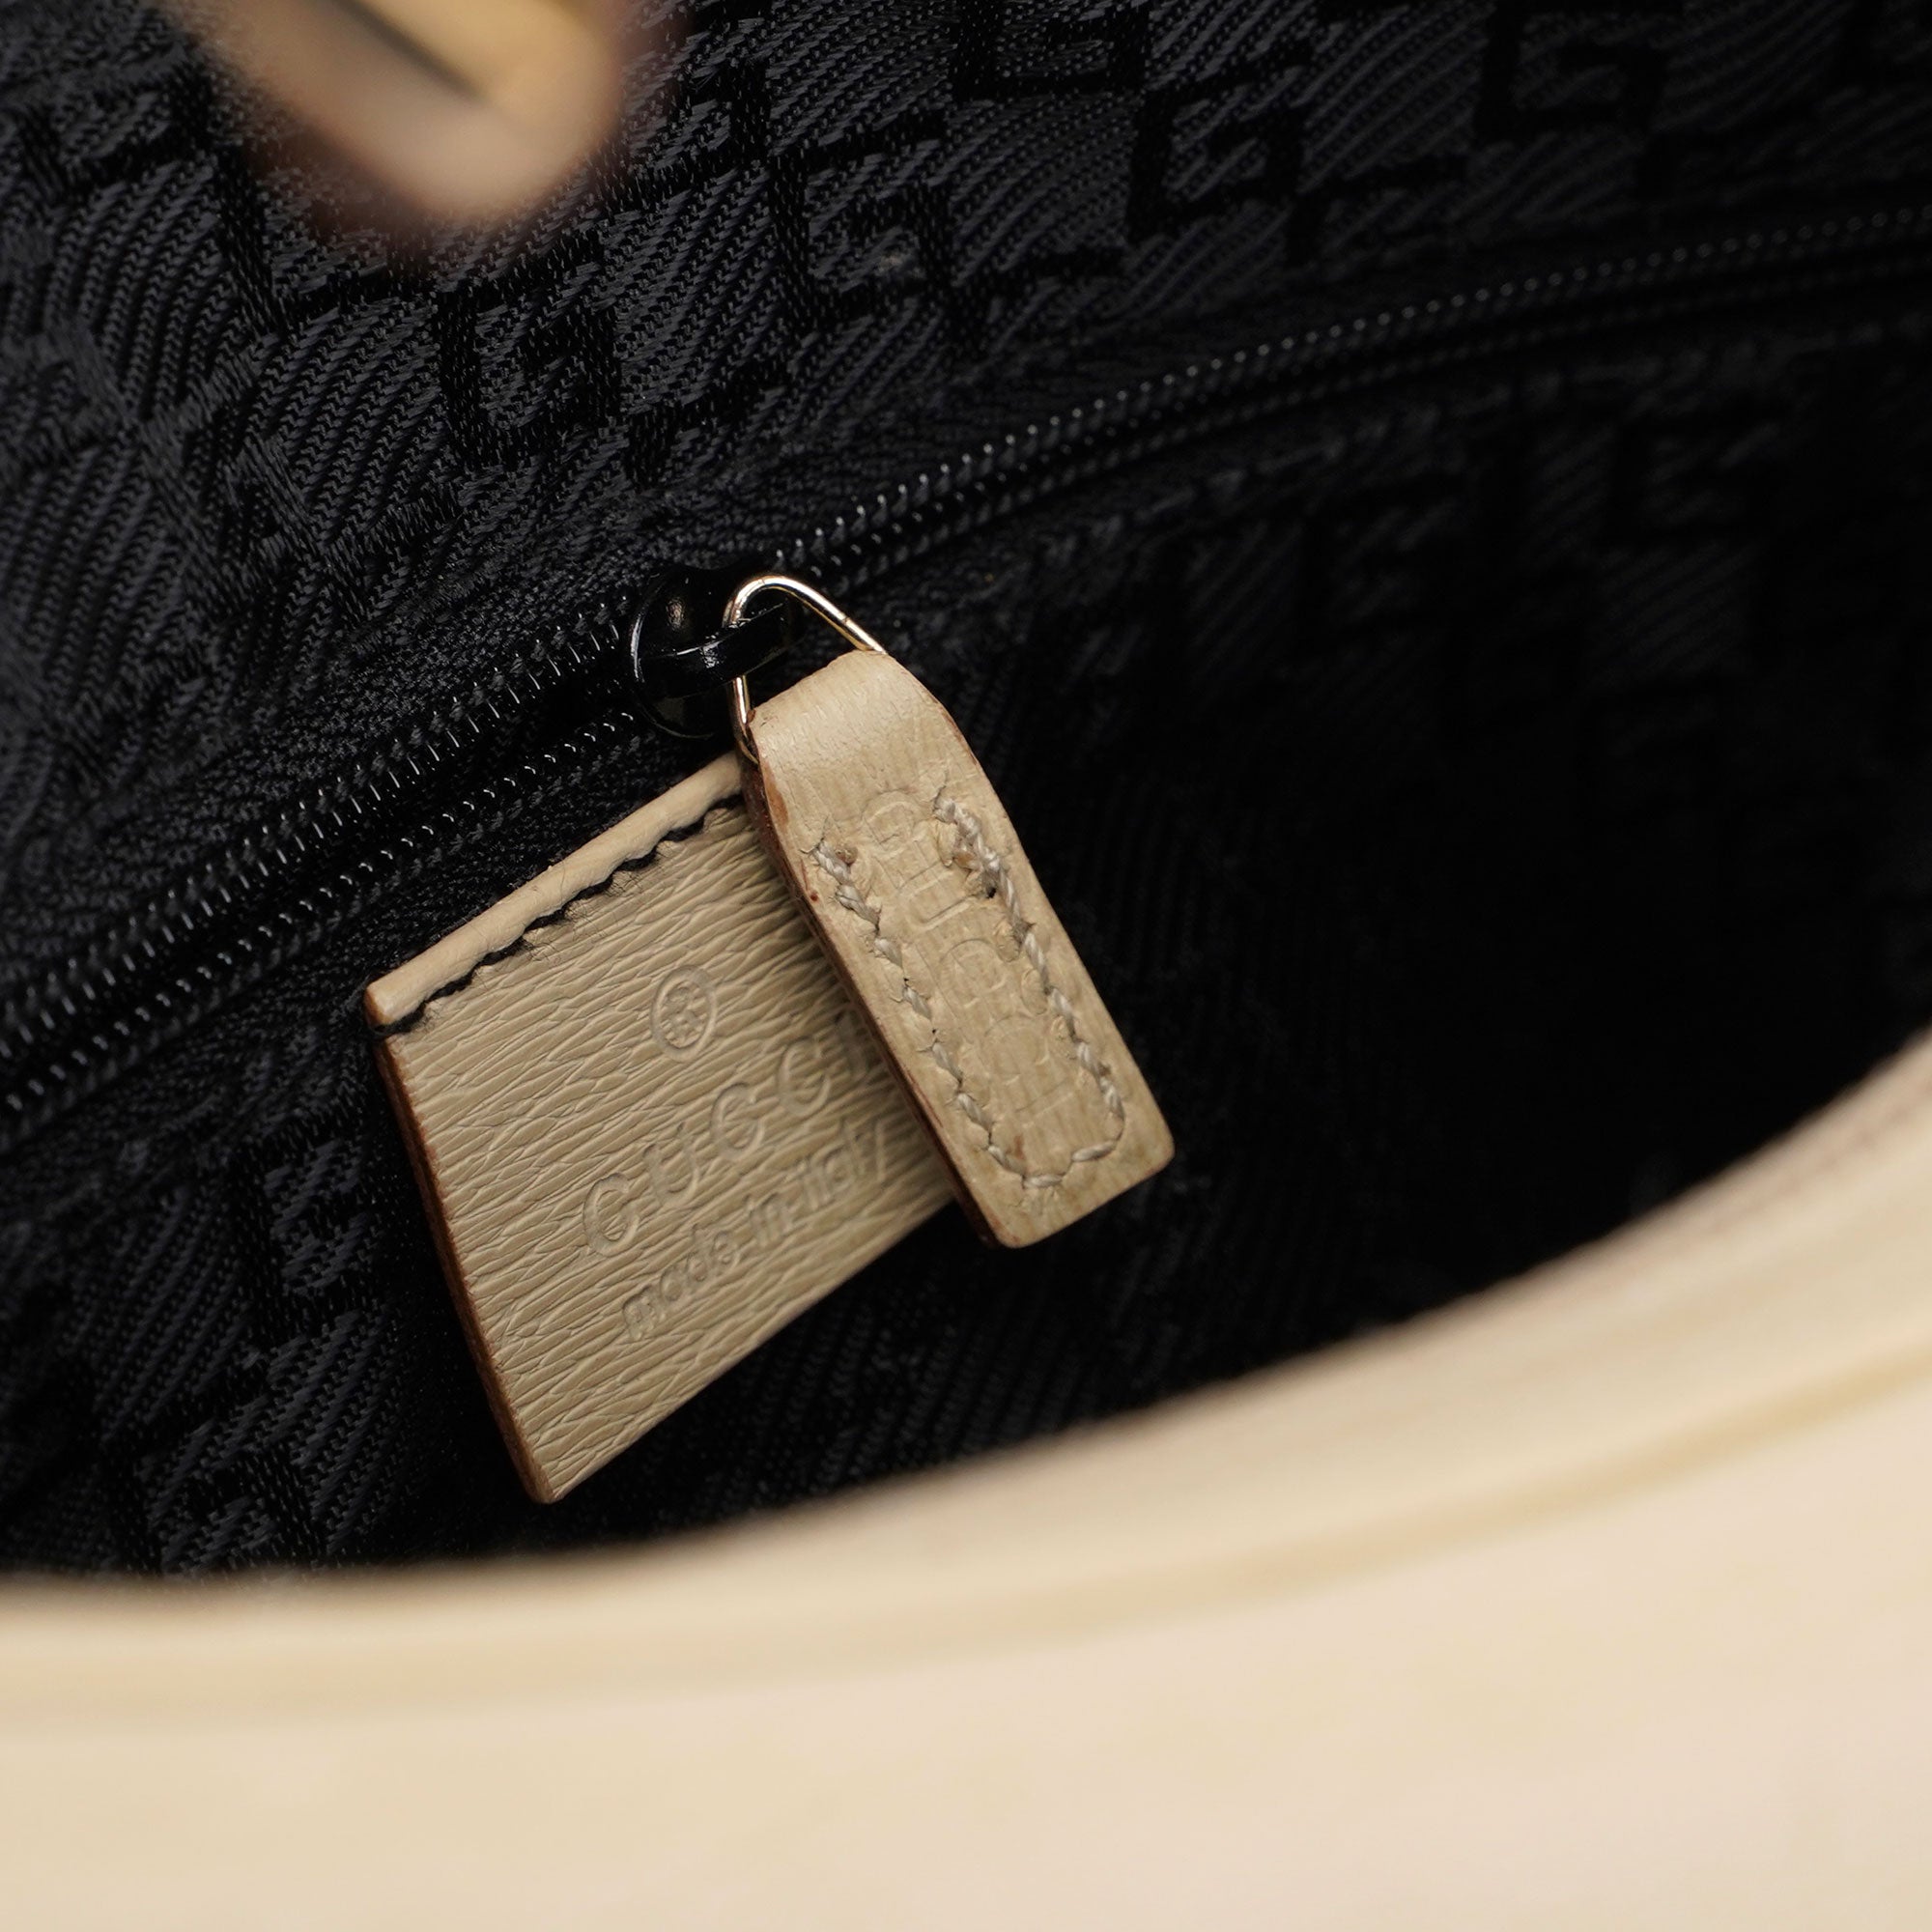 Gucci Beige Leather Shoulder Bag